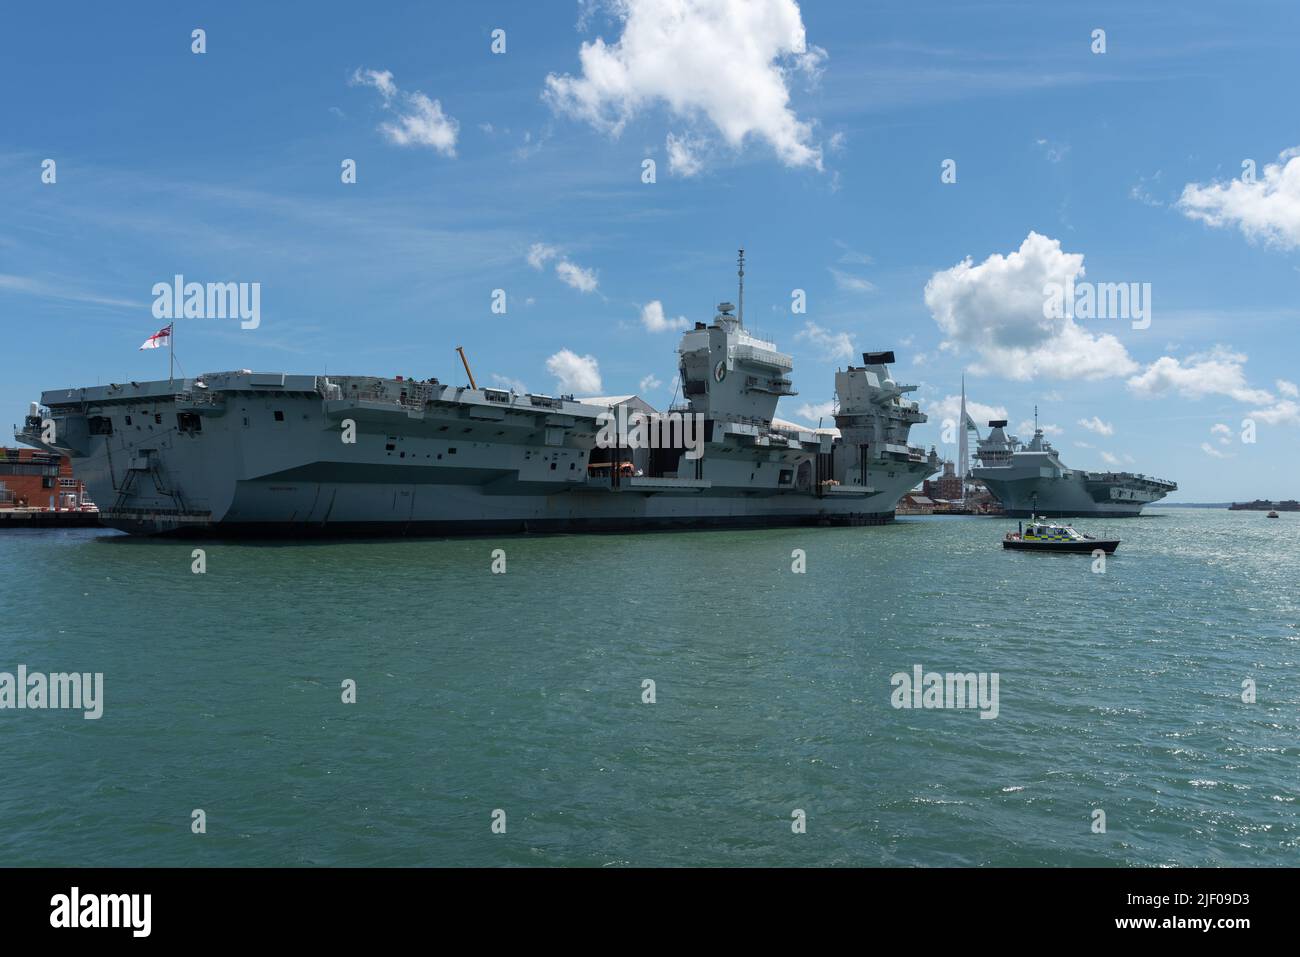 Ungewöhnlicher Anblick mit den beiden britischen Flugzeugträgern, die am Marinestützpunkt Portsmouth andockten. HMS Queen Elizabeth und HMS Prince of Wales Seite an Seite. Stockfoto